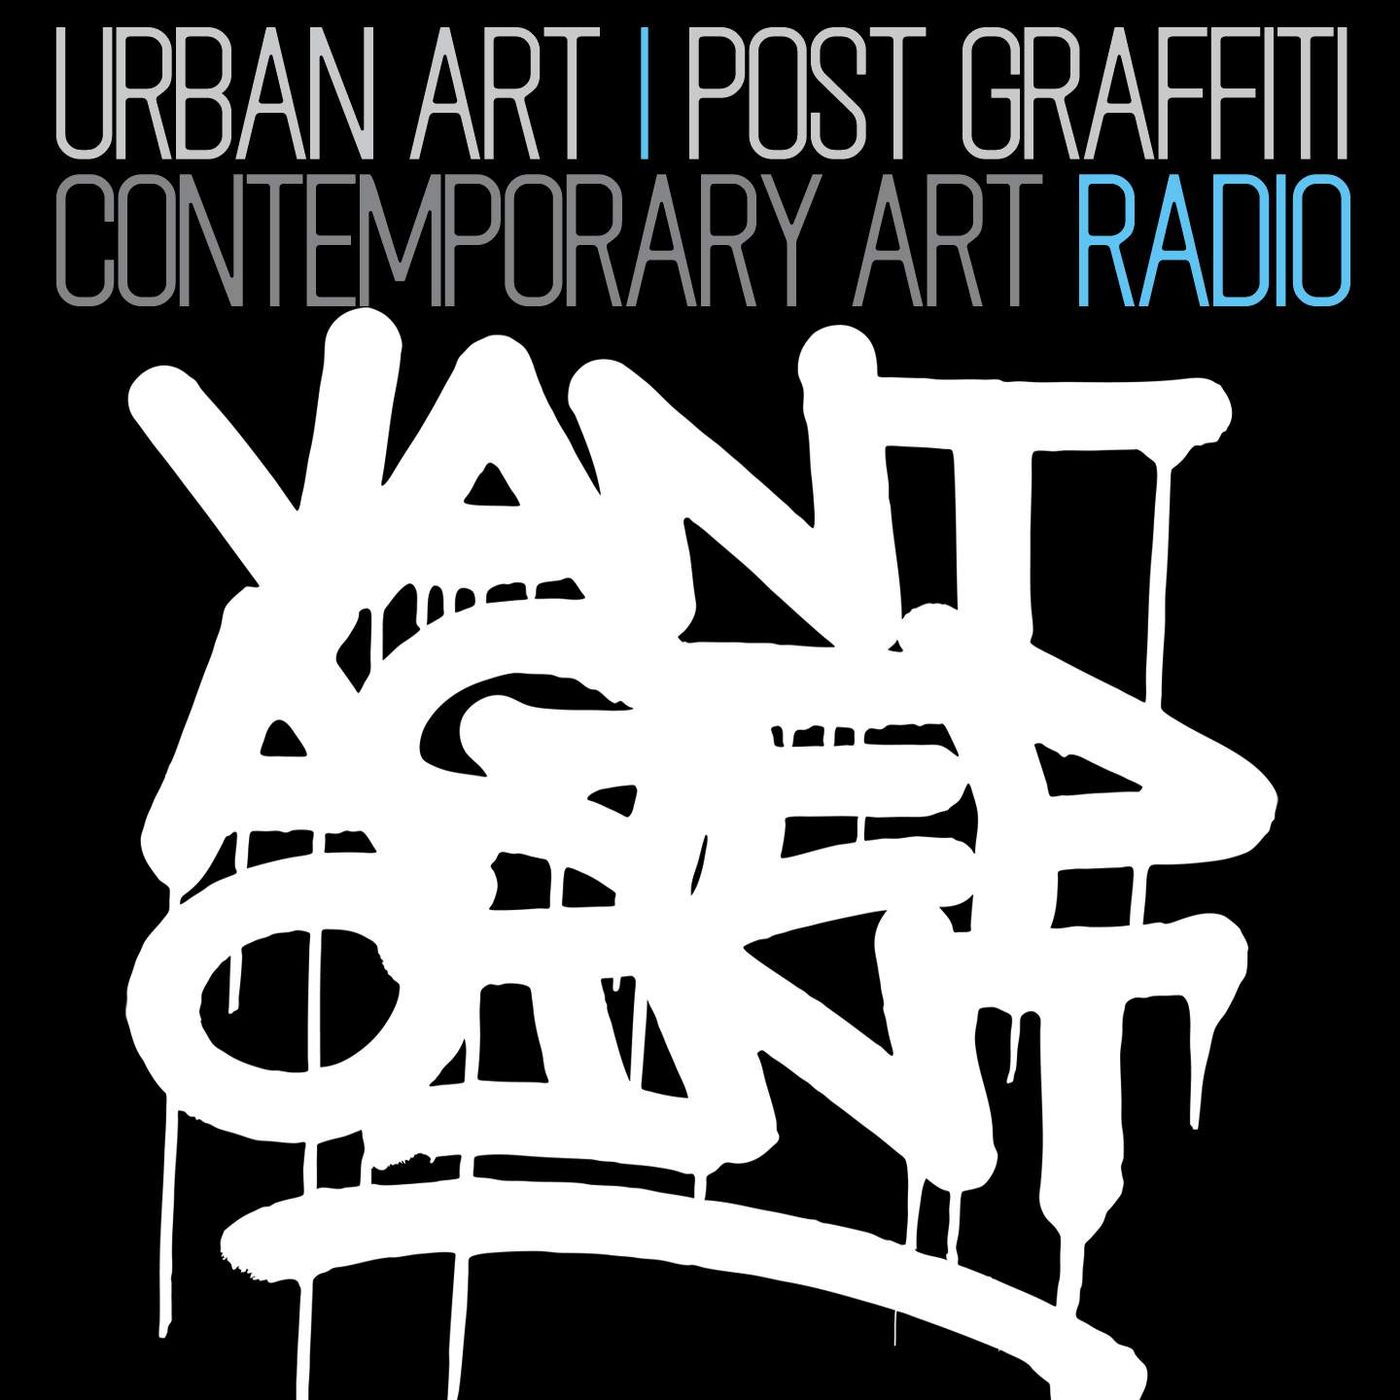 Vantagepoint Radio's tracks